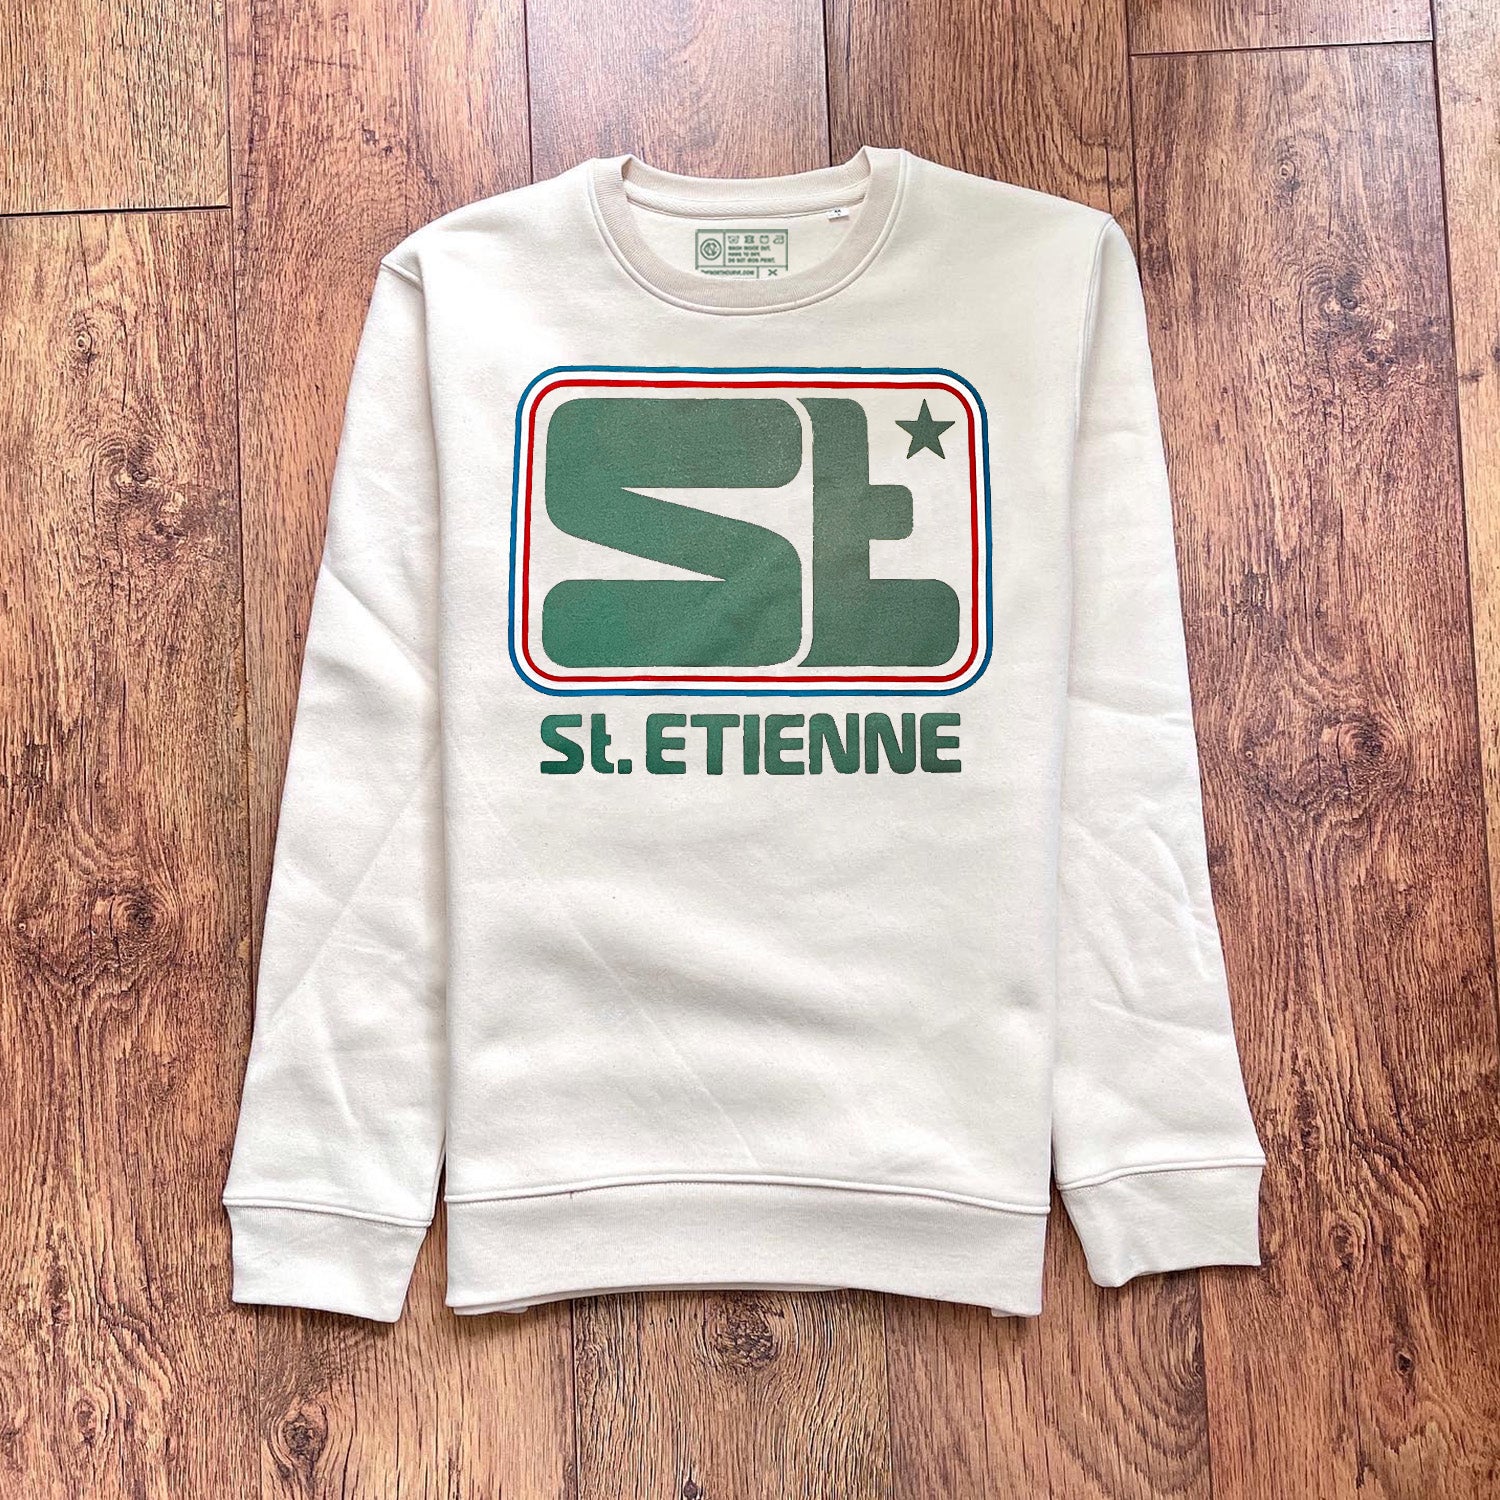 St Etienne football shirt t-shirt